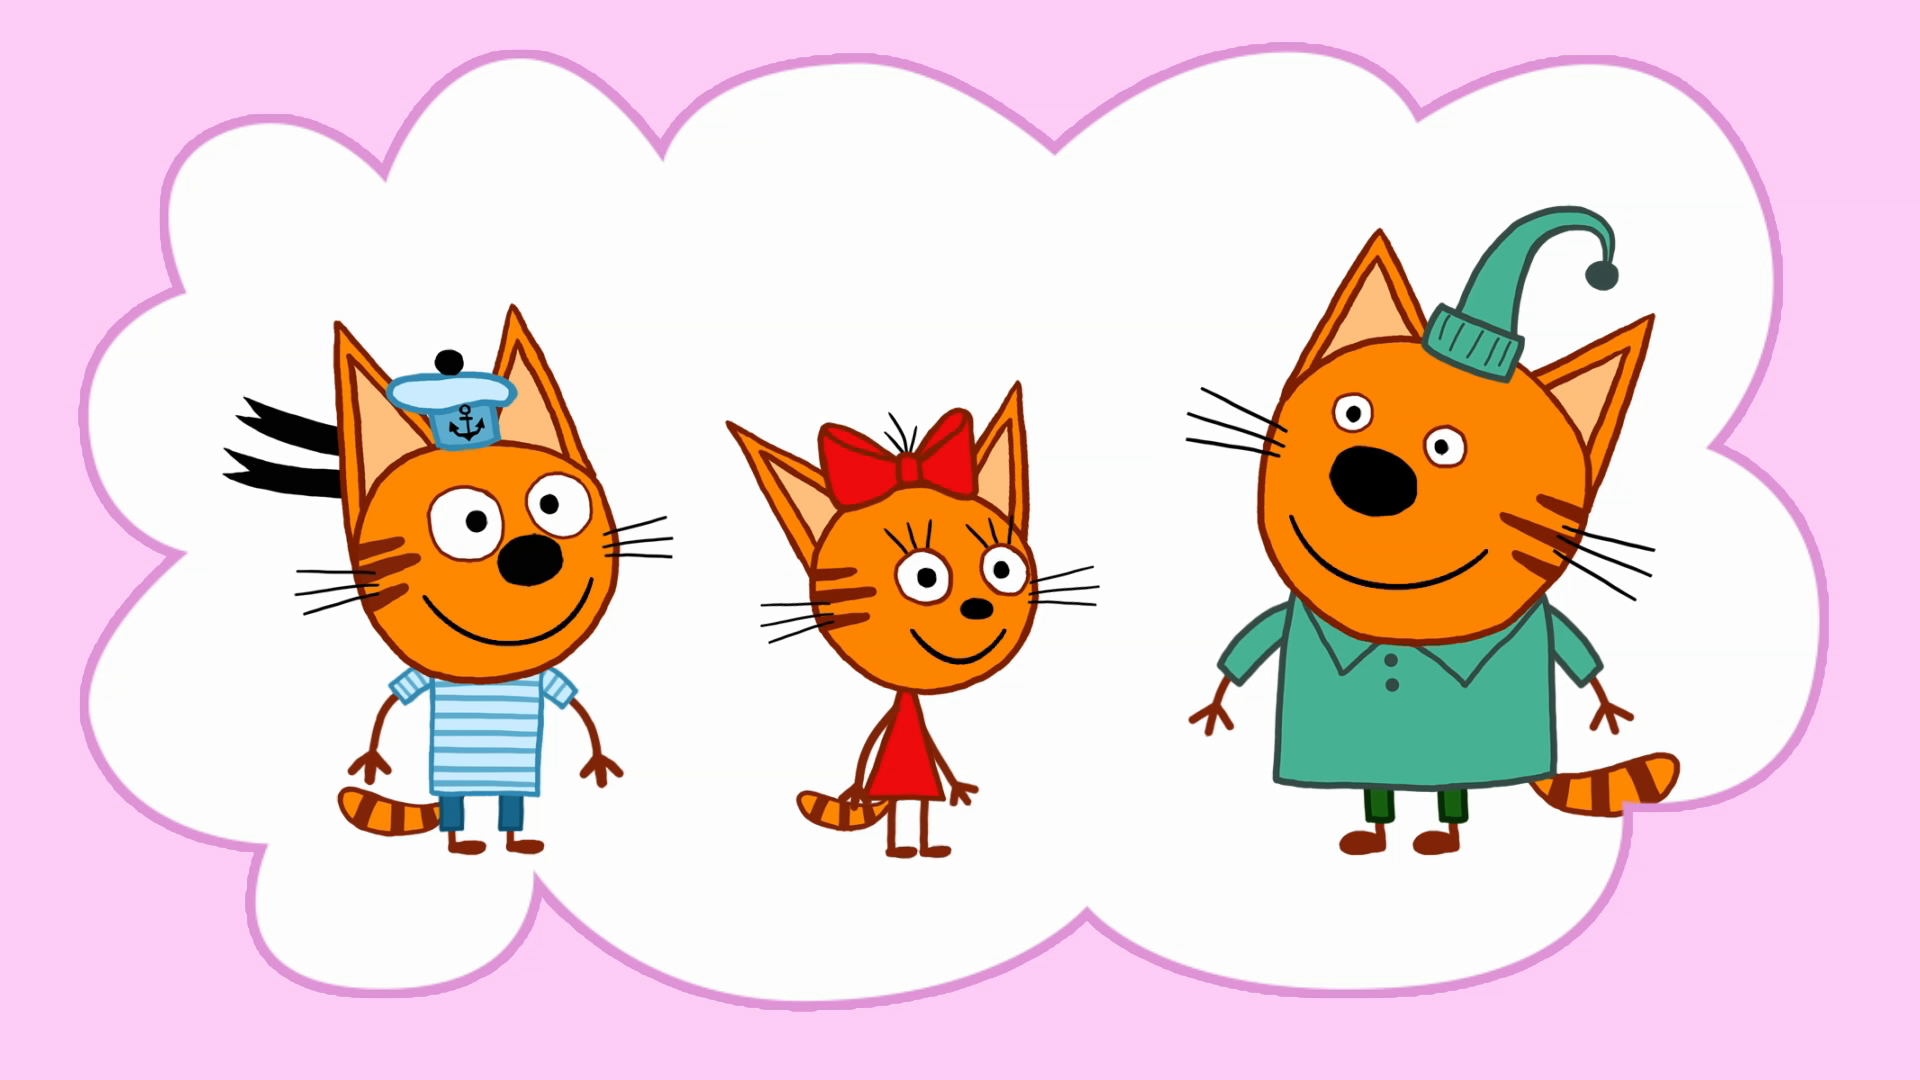 Герои мультика три кота компот. Коржик Карамелька и компот герои. Коржик Карамелька и компот 3 кота.